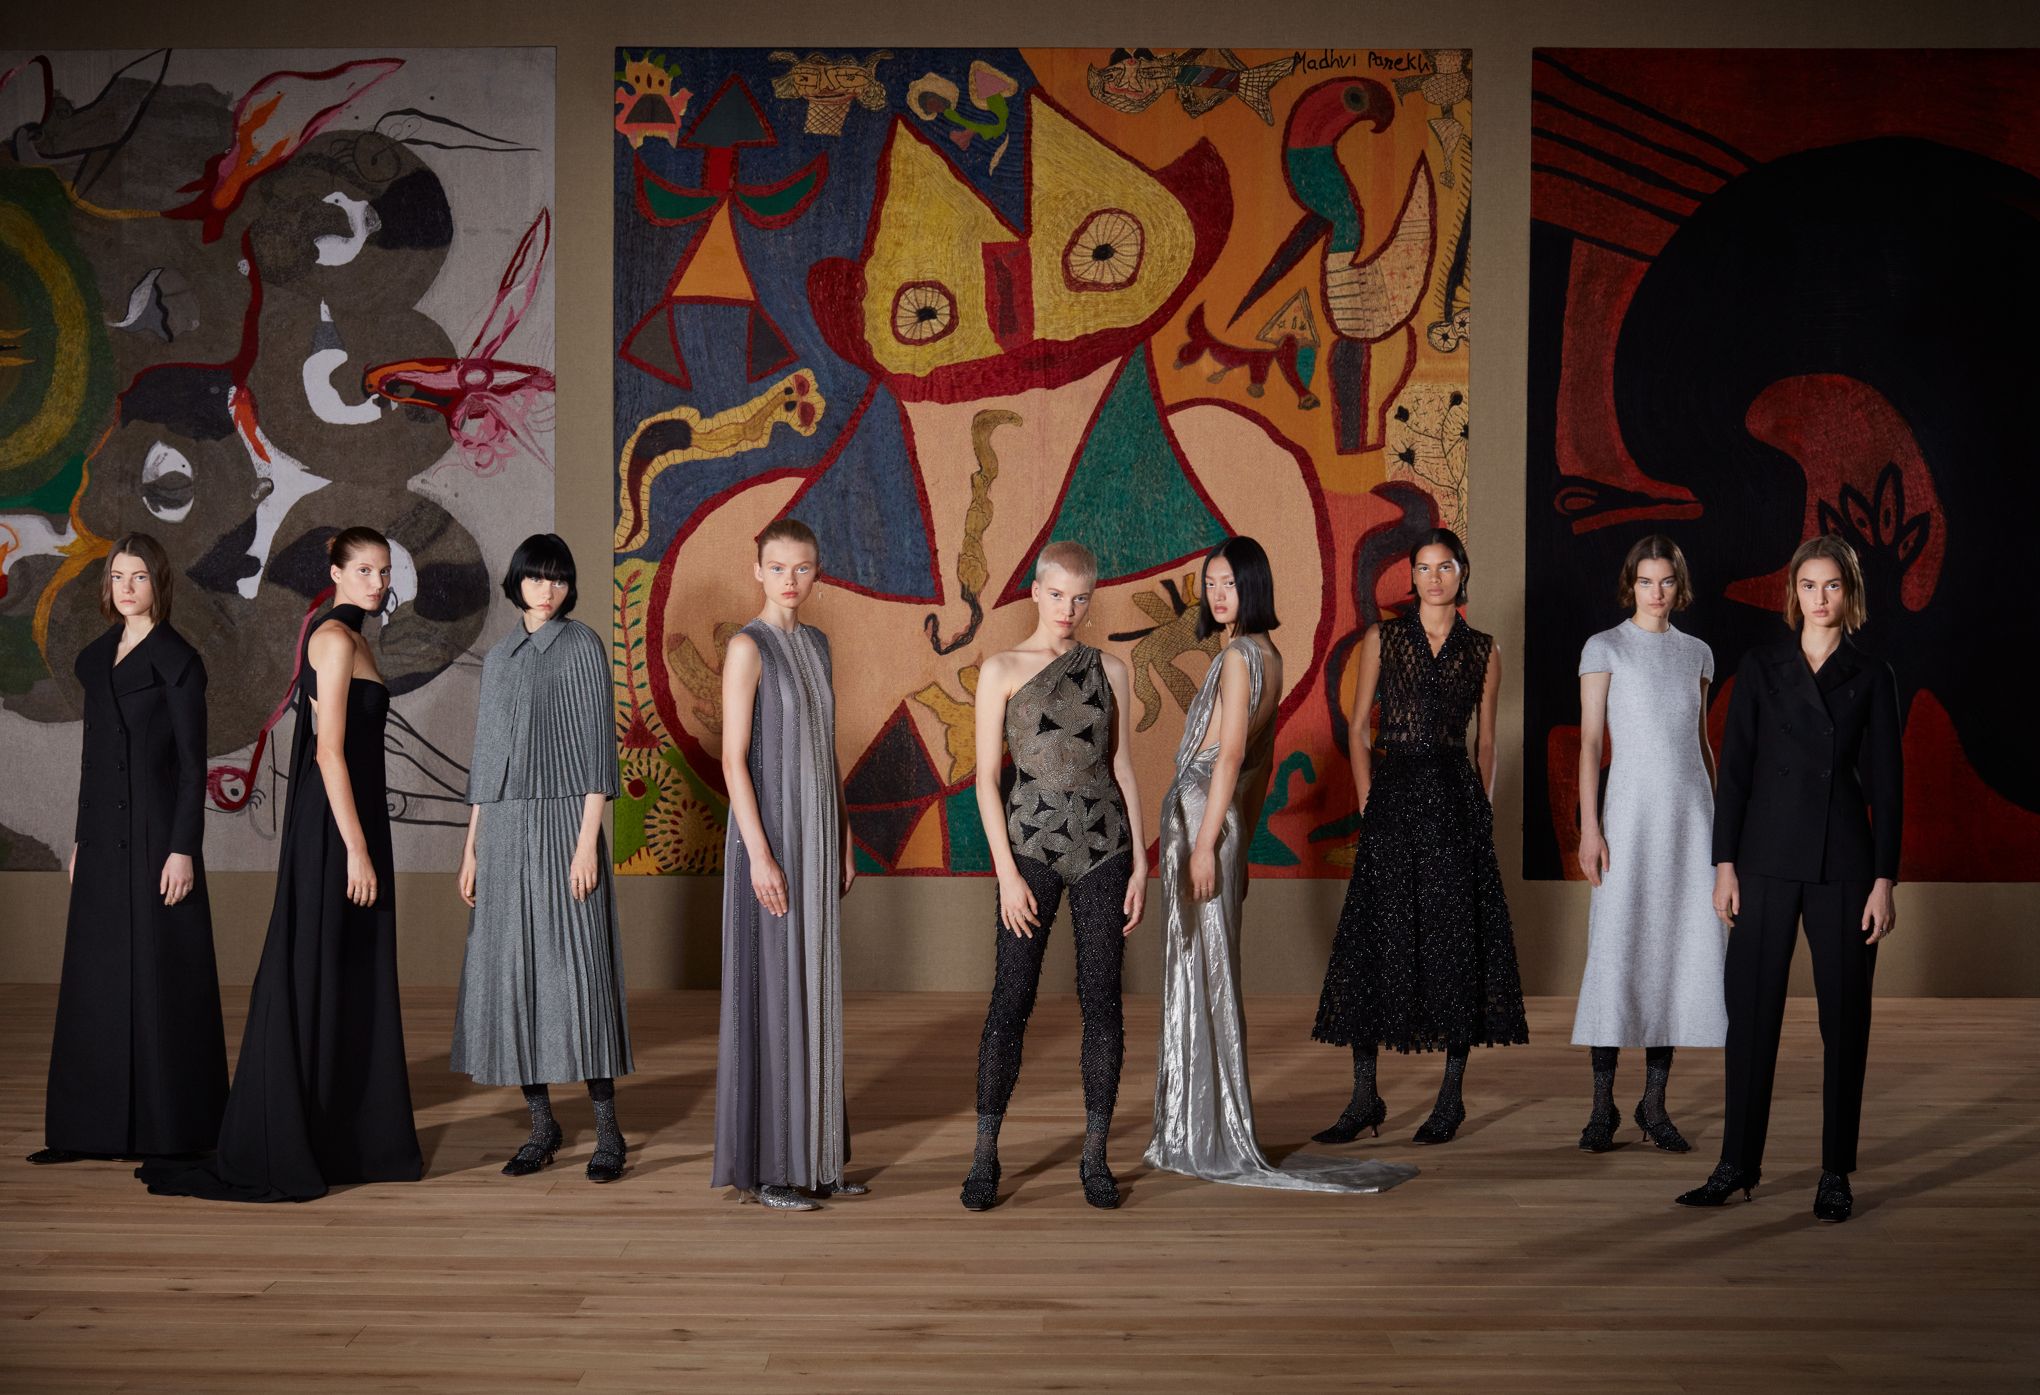 Haute couture 2022: Dior rend hommage au savoir-faire du monde entier